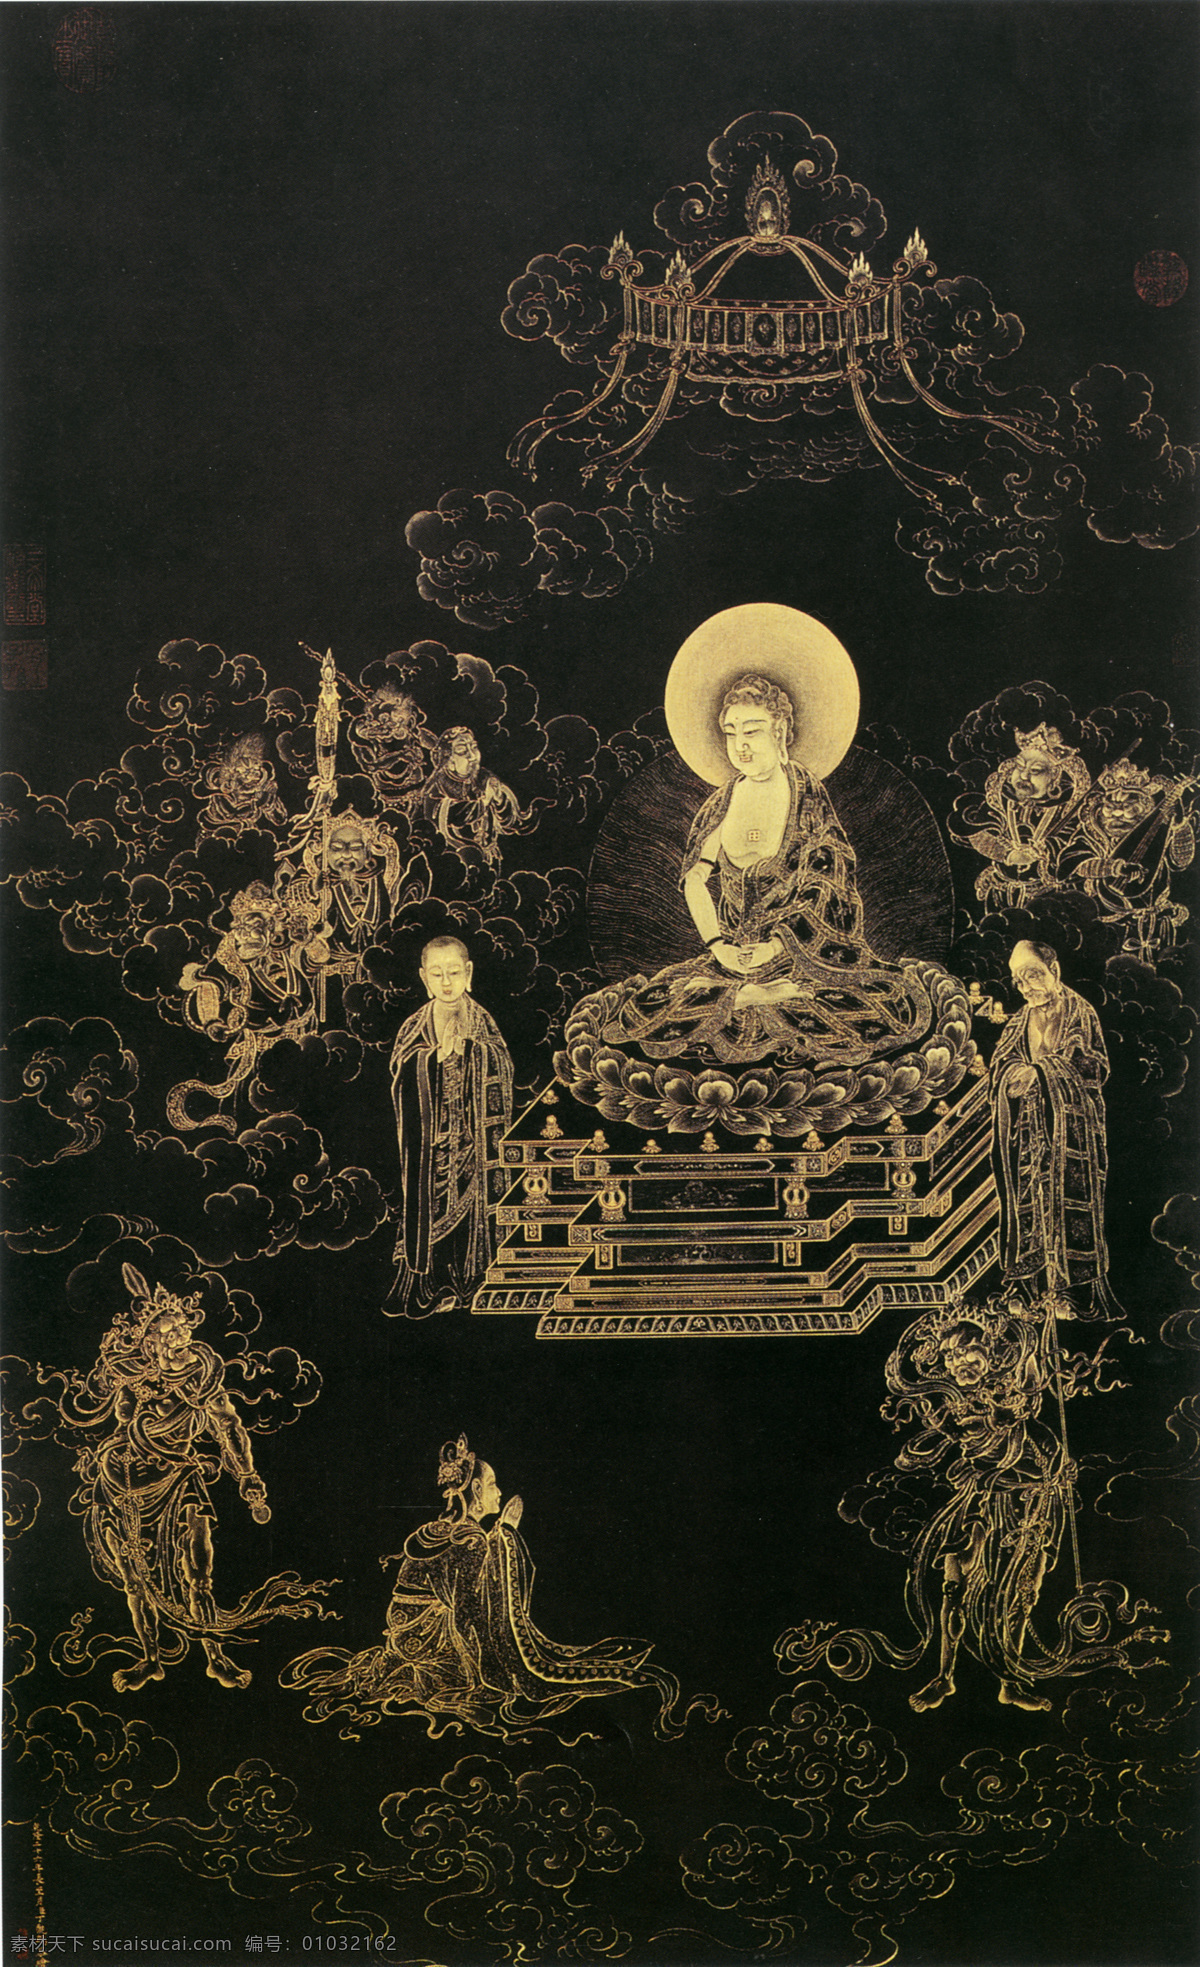 无量 寿 佛图 无量寿佛图 神仙佛像 中国古画 设计素材 古典藏画 书画美术 黑色